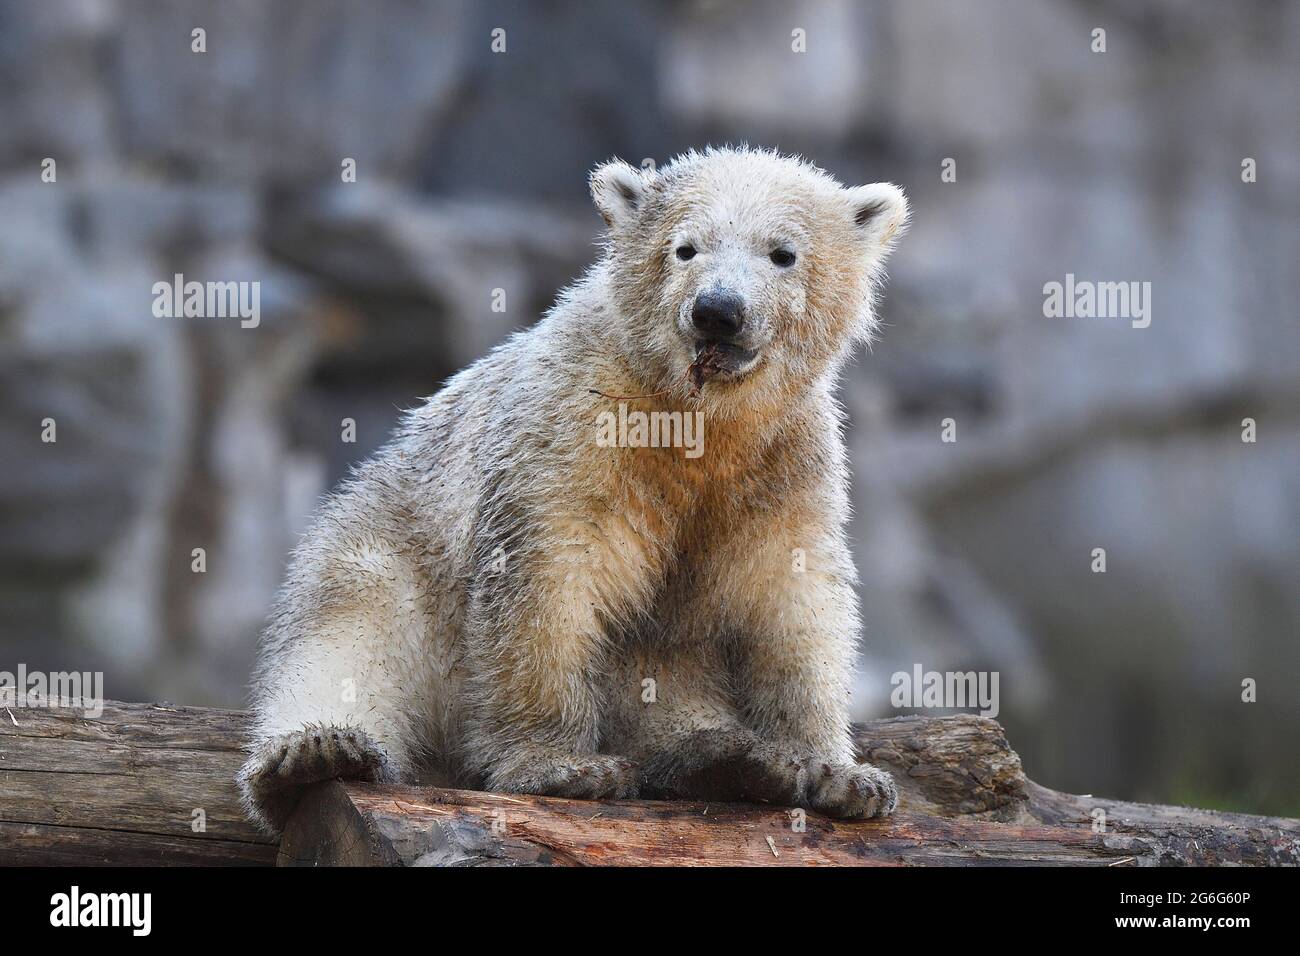 Orso polare (Ursus maritimus), cucciolo di orso polare seduto su un tronco di albero Foto Stock